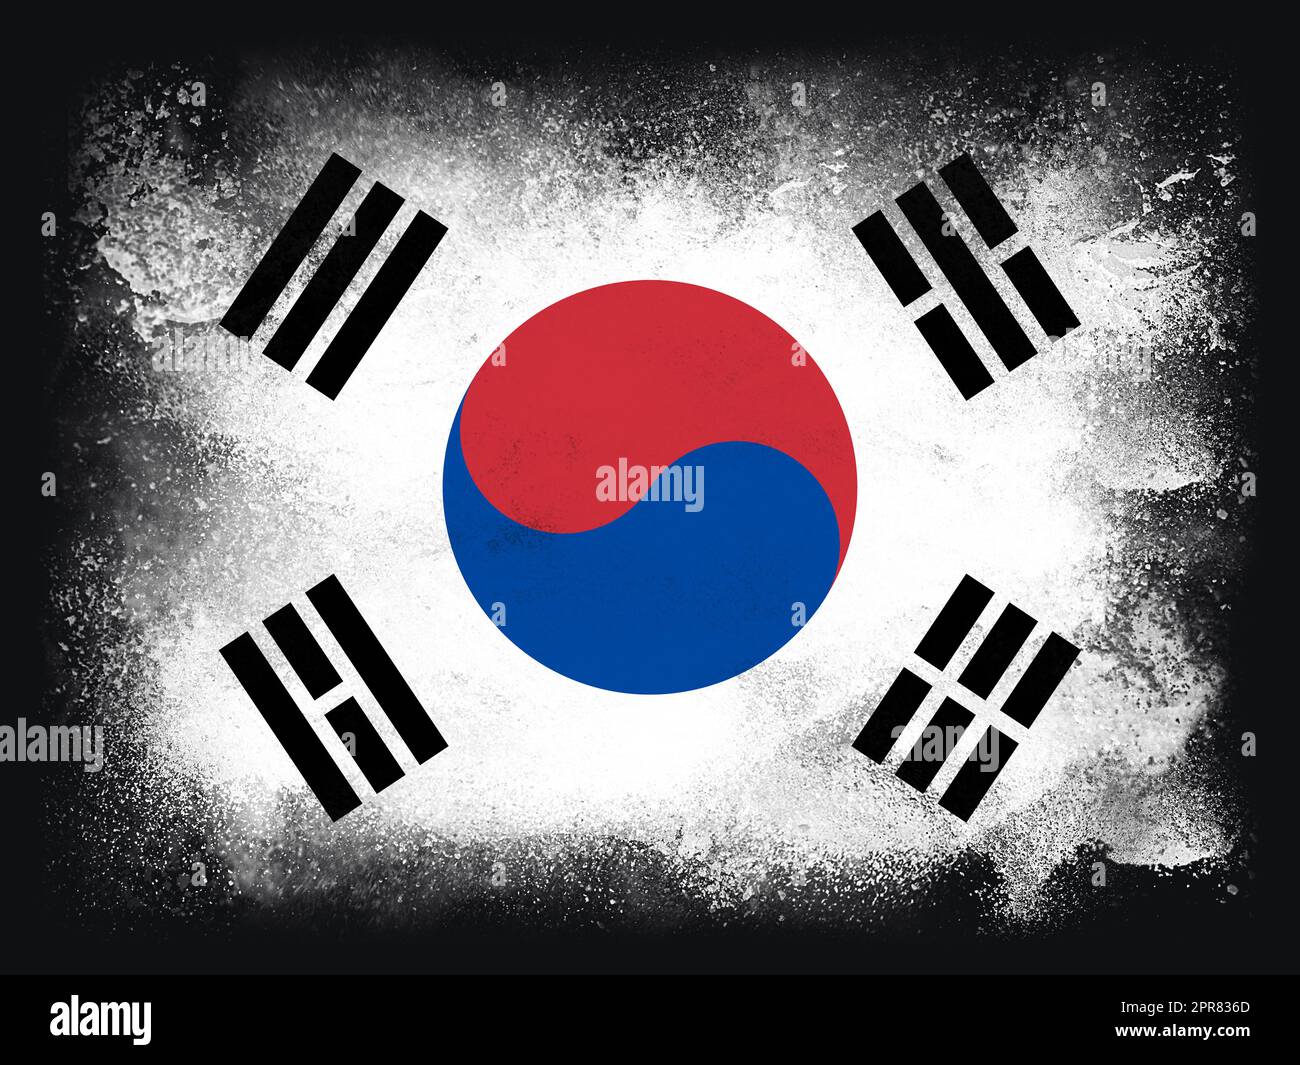 République de Corée du Sud drapeau composition de la poudre et de la peinture explosant, isolée sur un fond noir pour l'espace de copie. Symbole football de la coupe du monde 2022, motif abstrait pour l'impression Banque D'Images